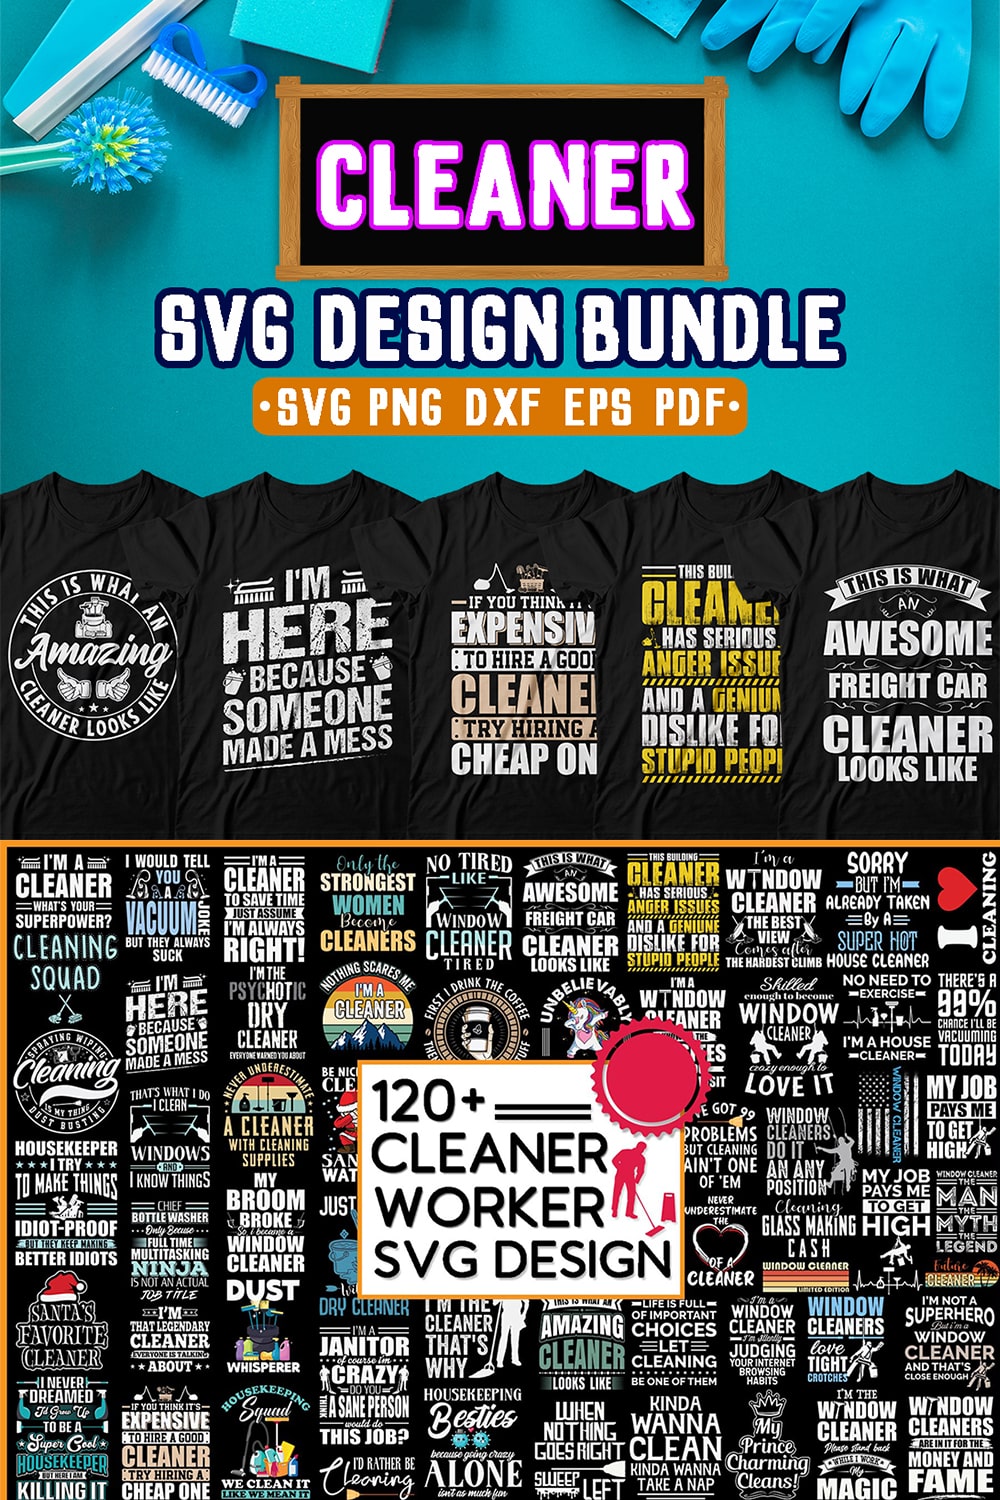 Cleaner SVG Design Bundle pinterest preview image.